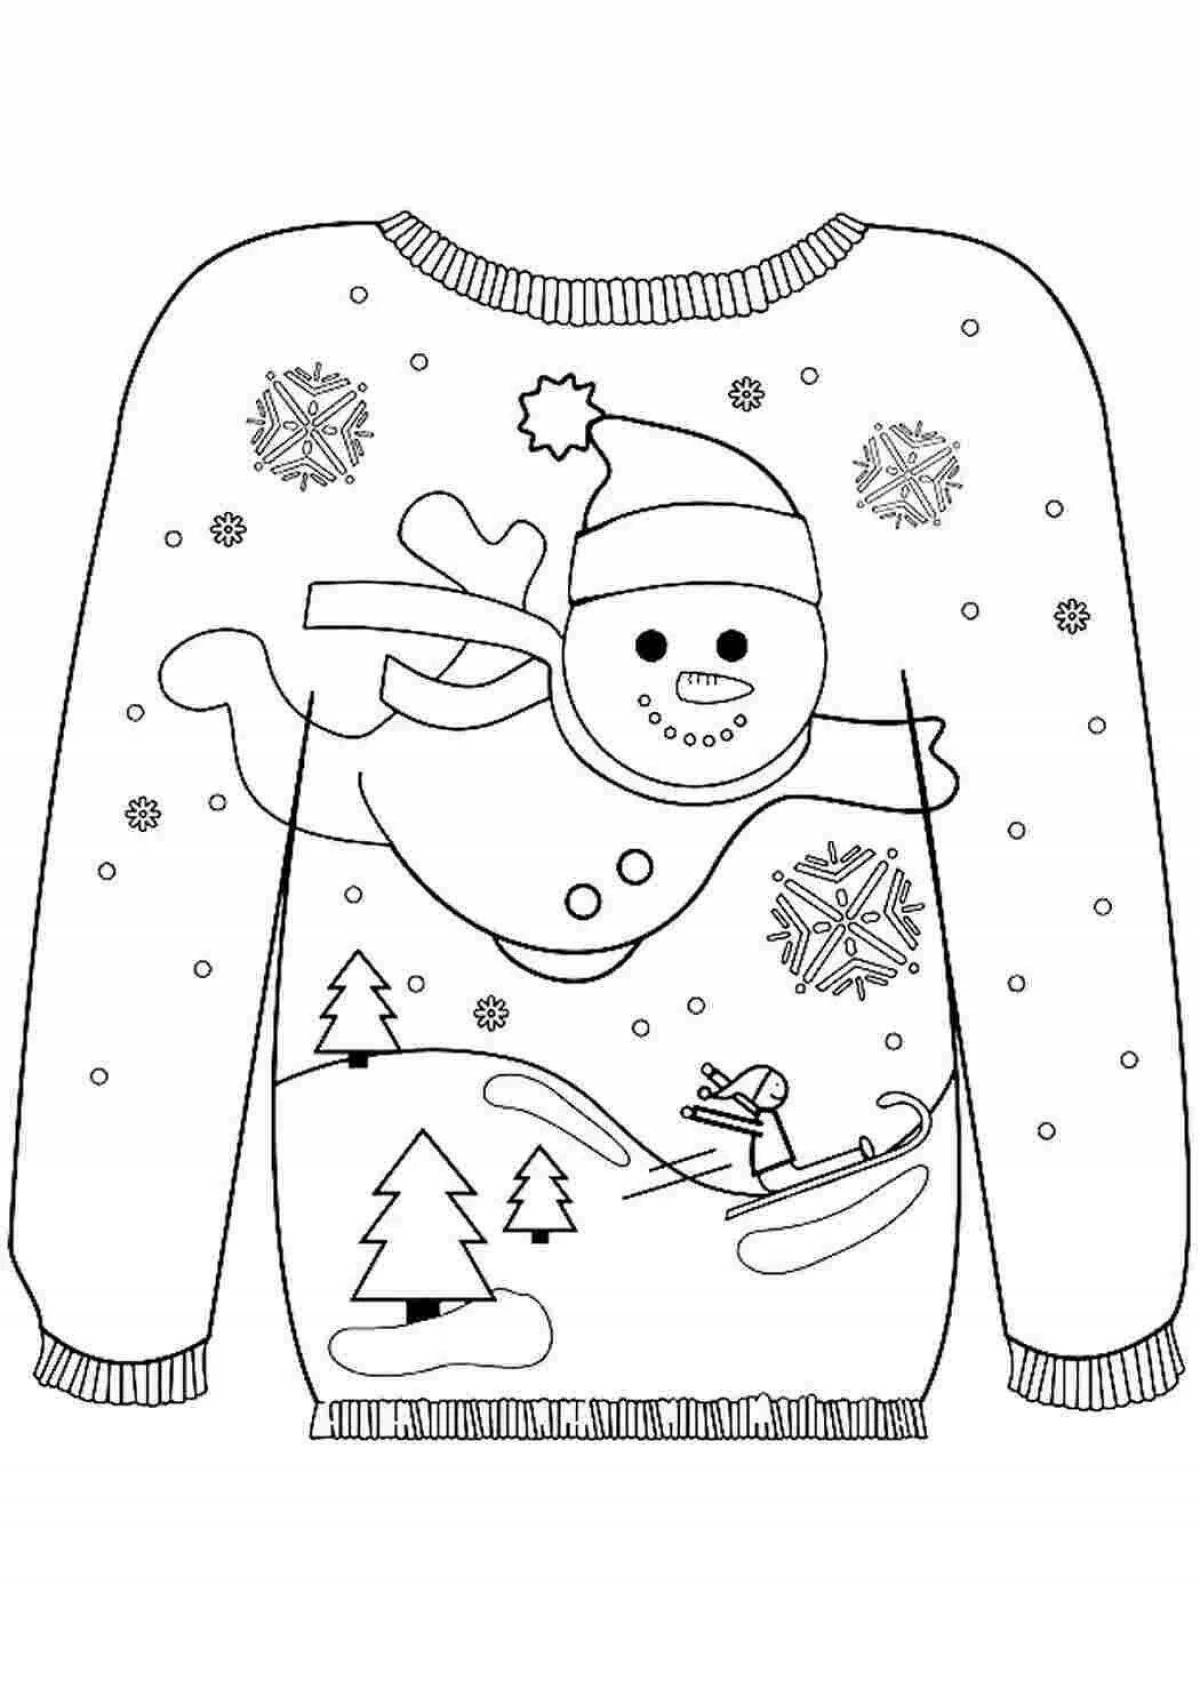 Раскраска с милой зимней одеждой для детей 6-7 лет